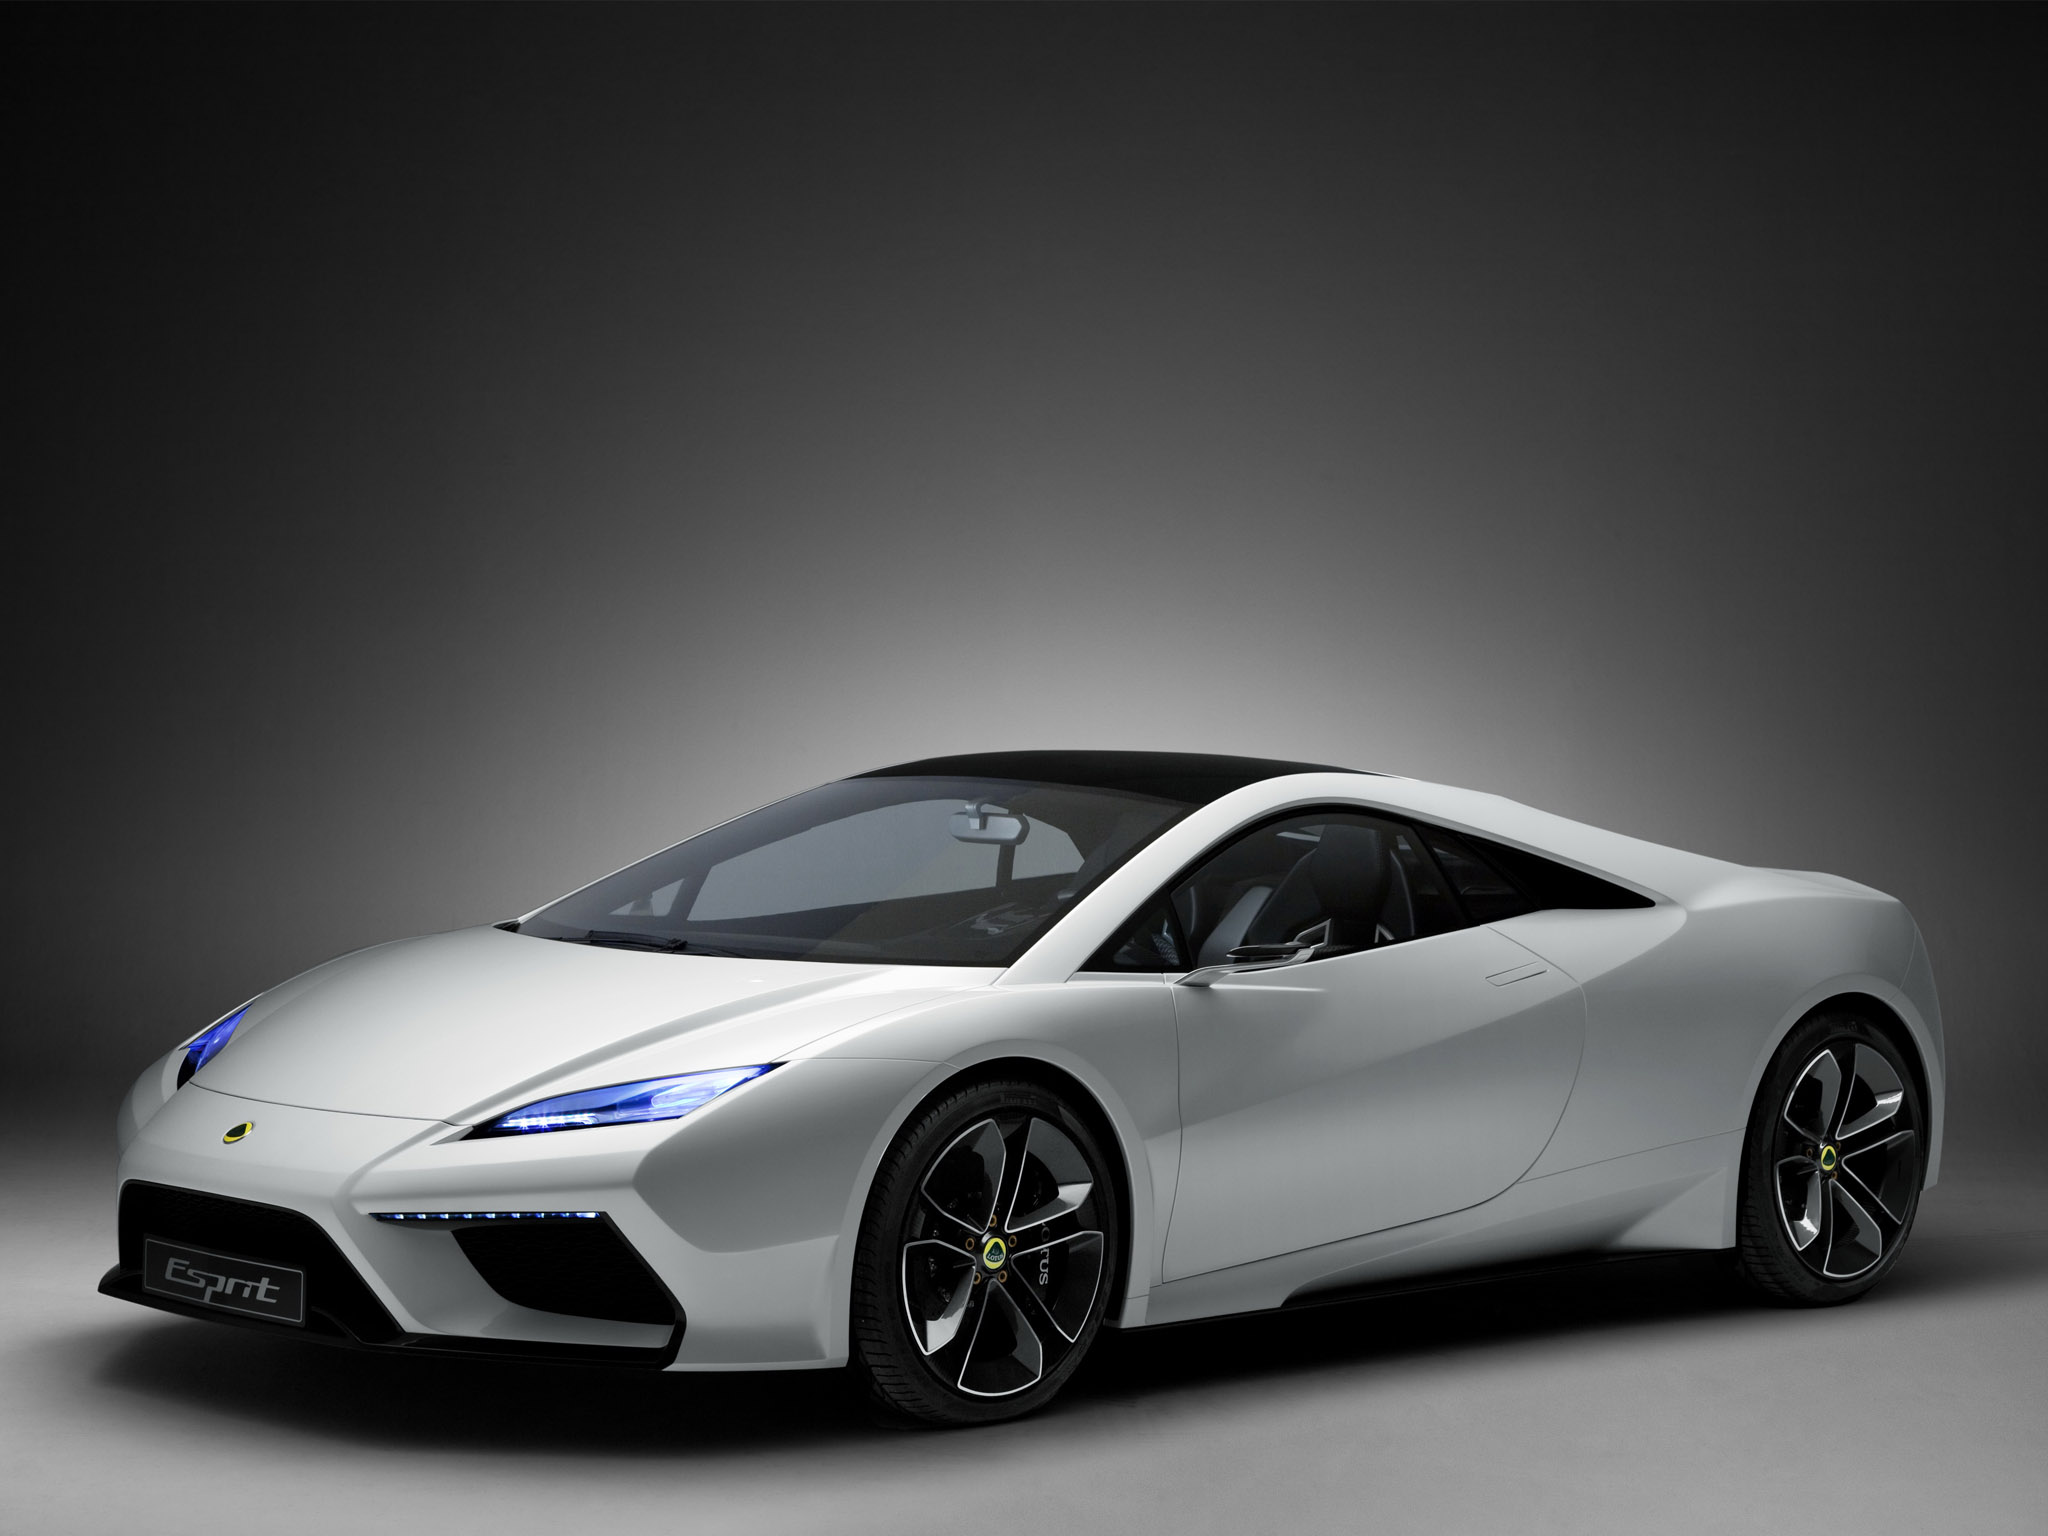 2010 Lotus Esprit Concept